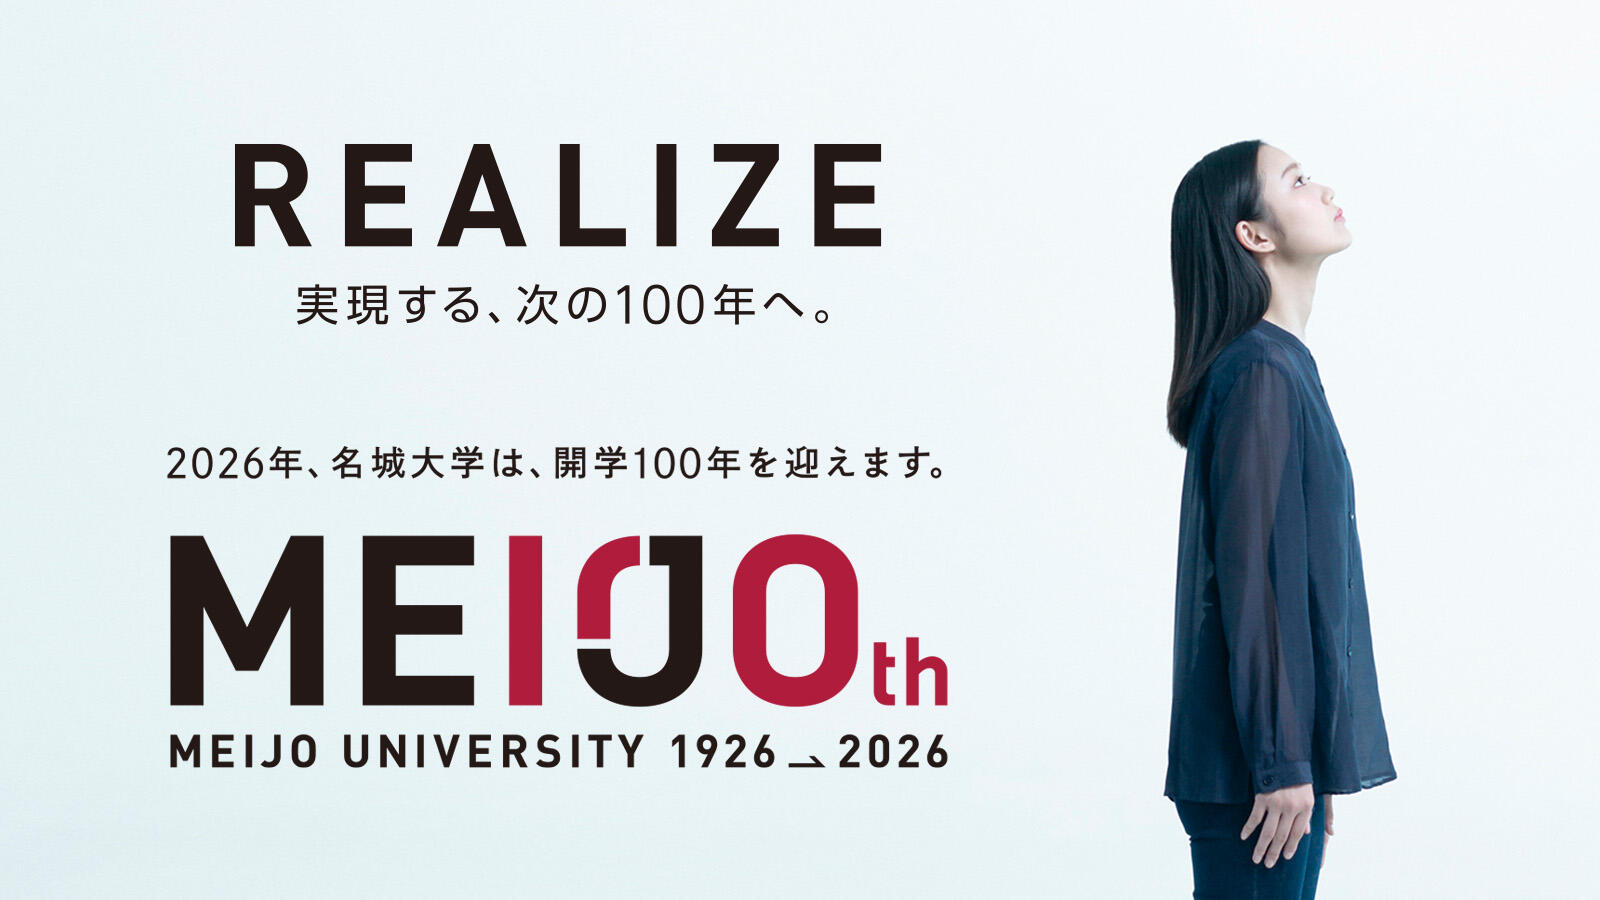 開学100周年特設サイト『REALIZE実現する次の100年へ。』